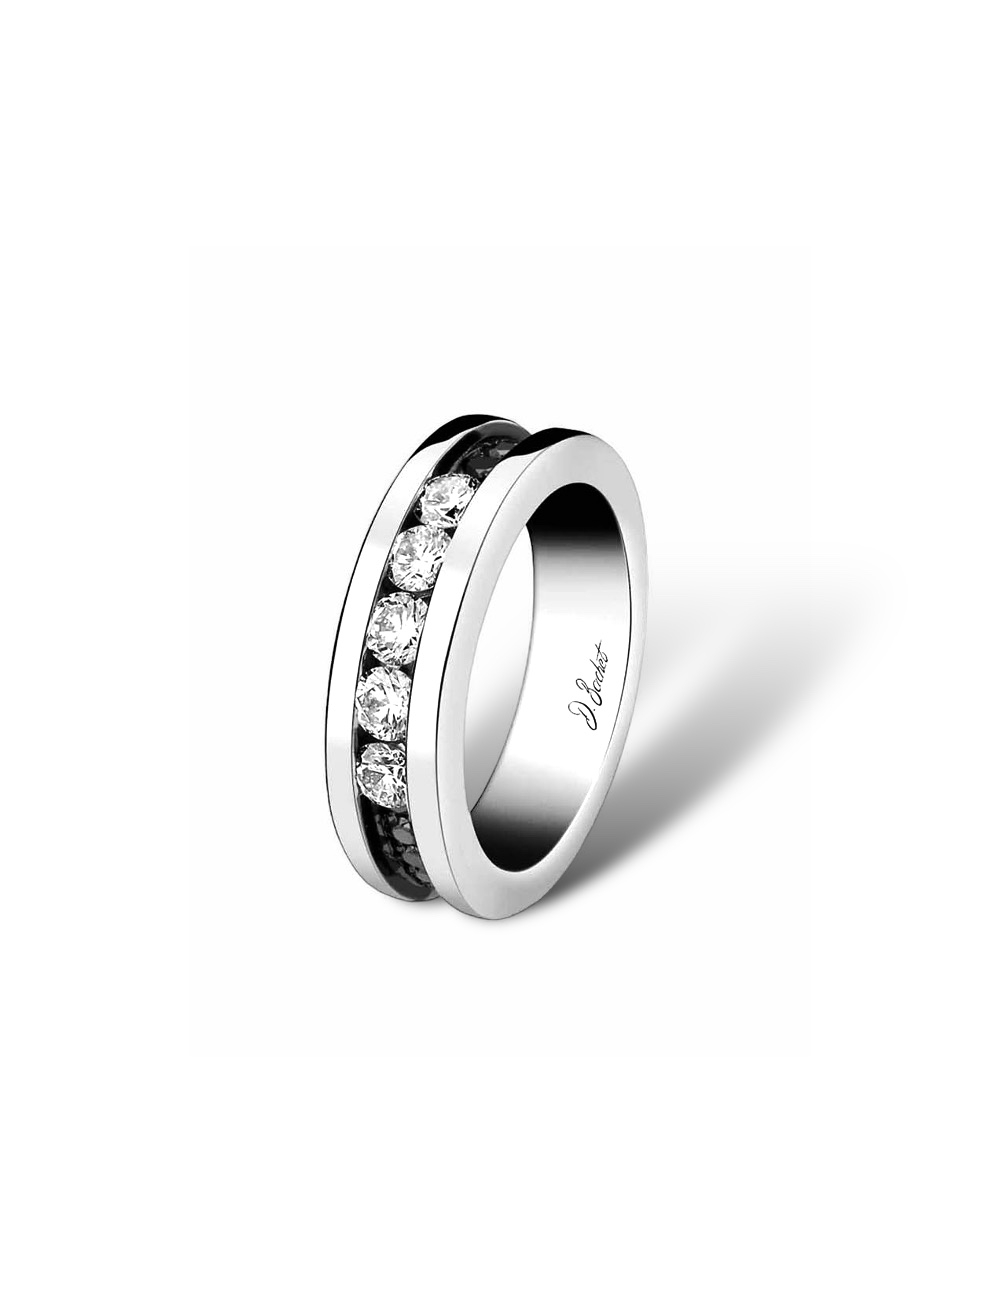 Alliance 'Light in Paris' en platine avec diamants blancs et noirs, incarnant une élégance moderne dans une bande de 5 mm.